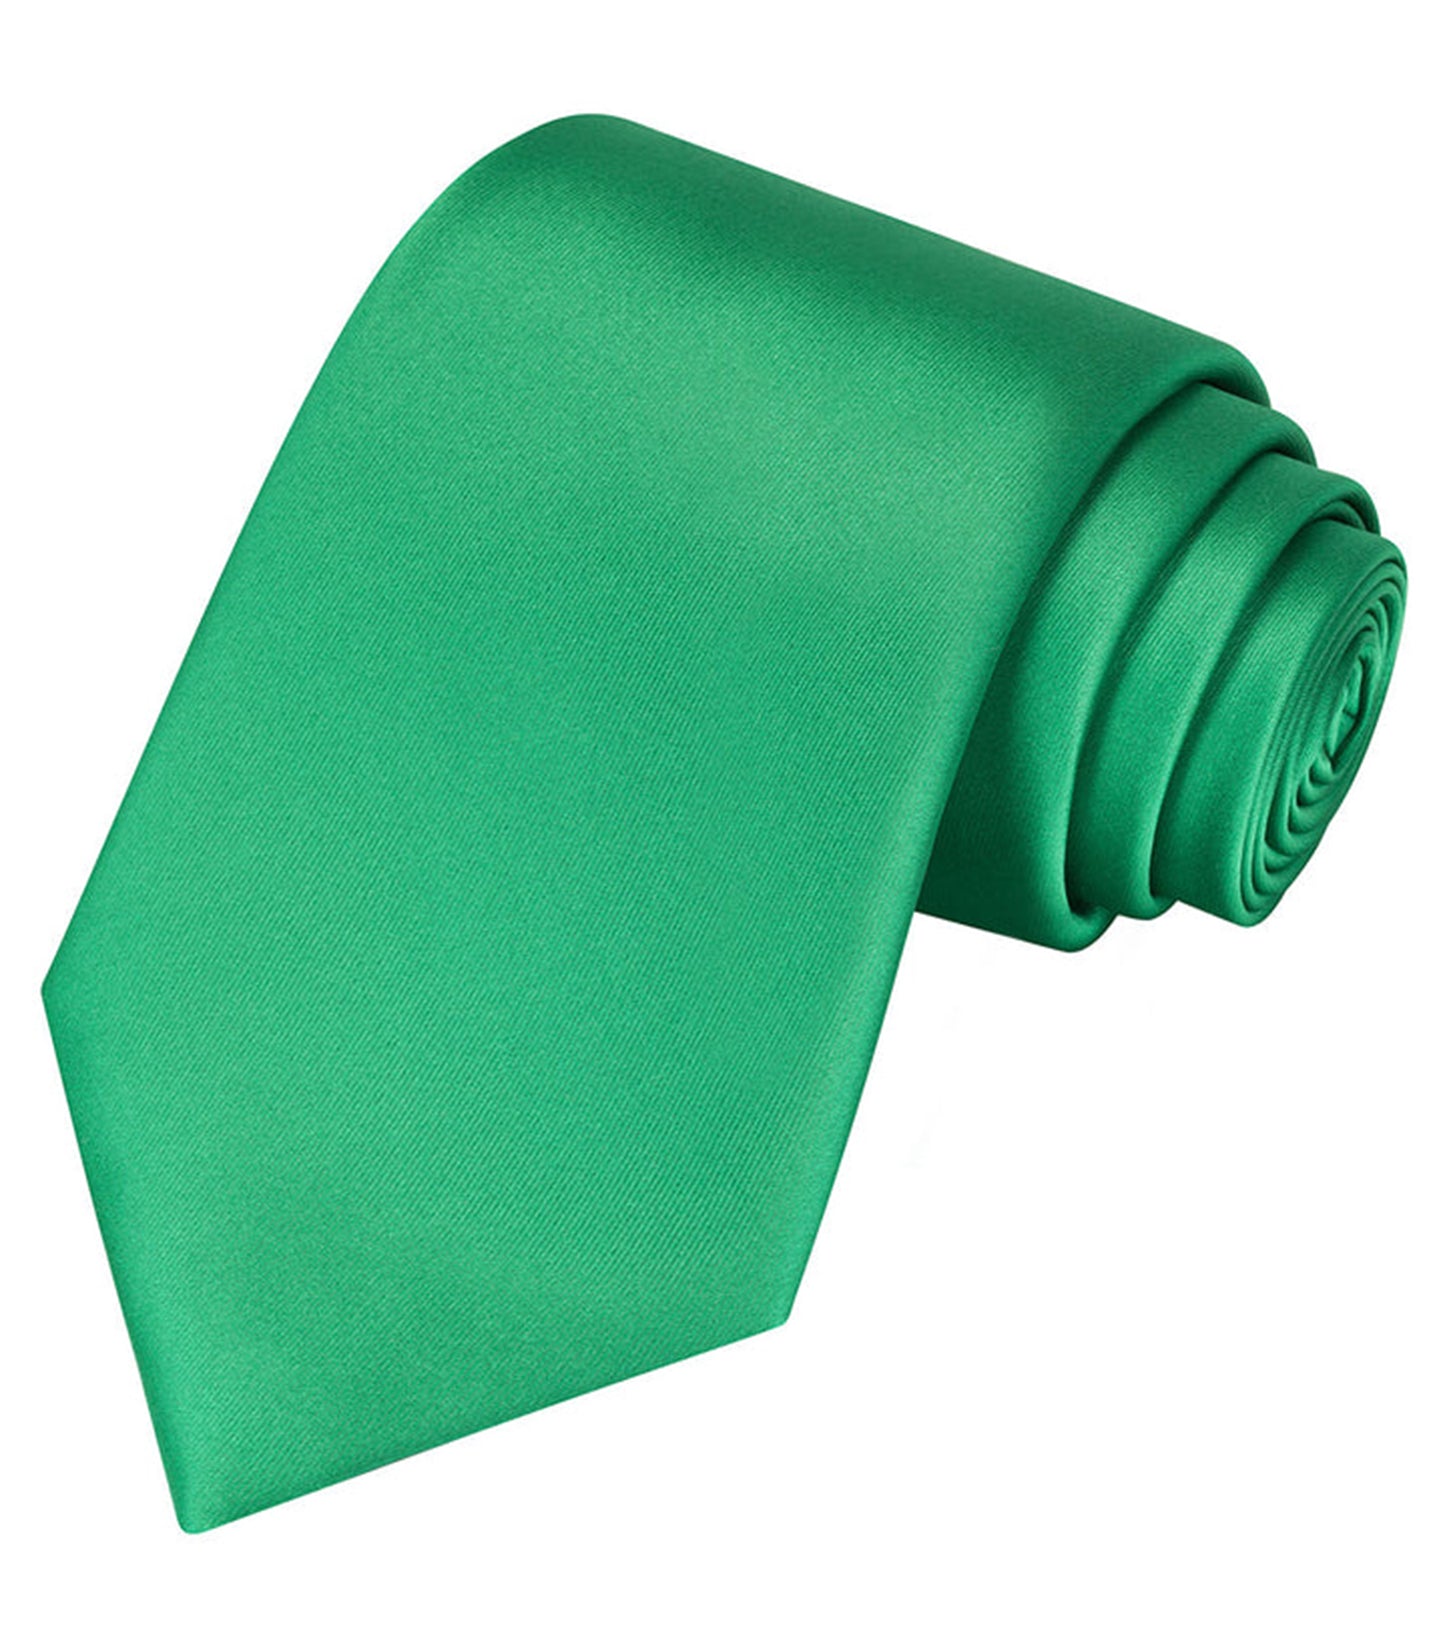 Green Satin tie | high-quality necktie